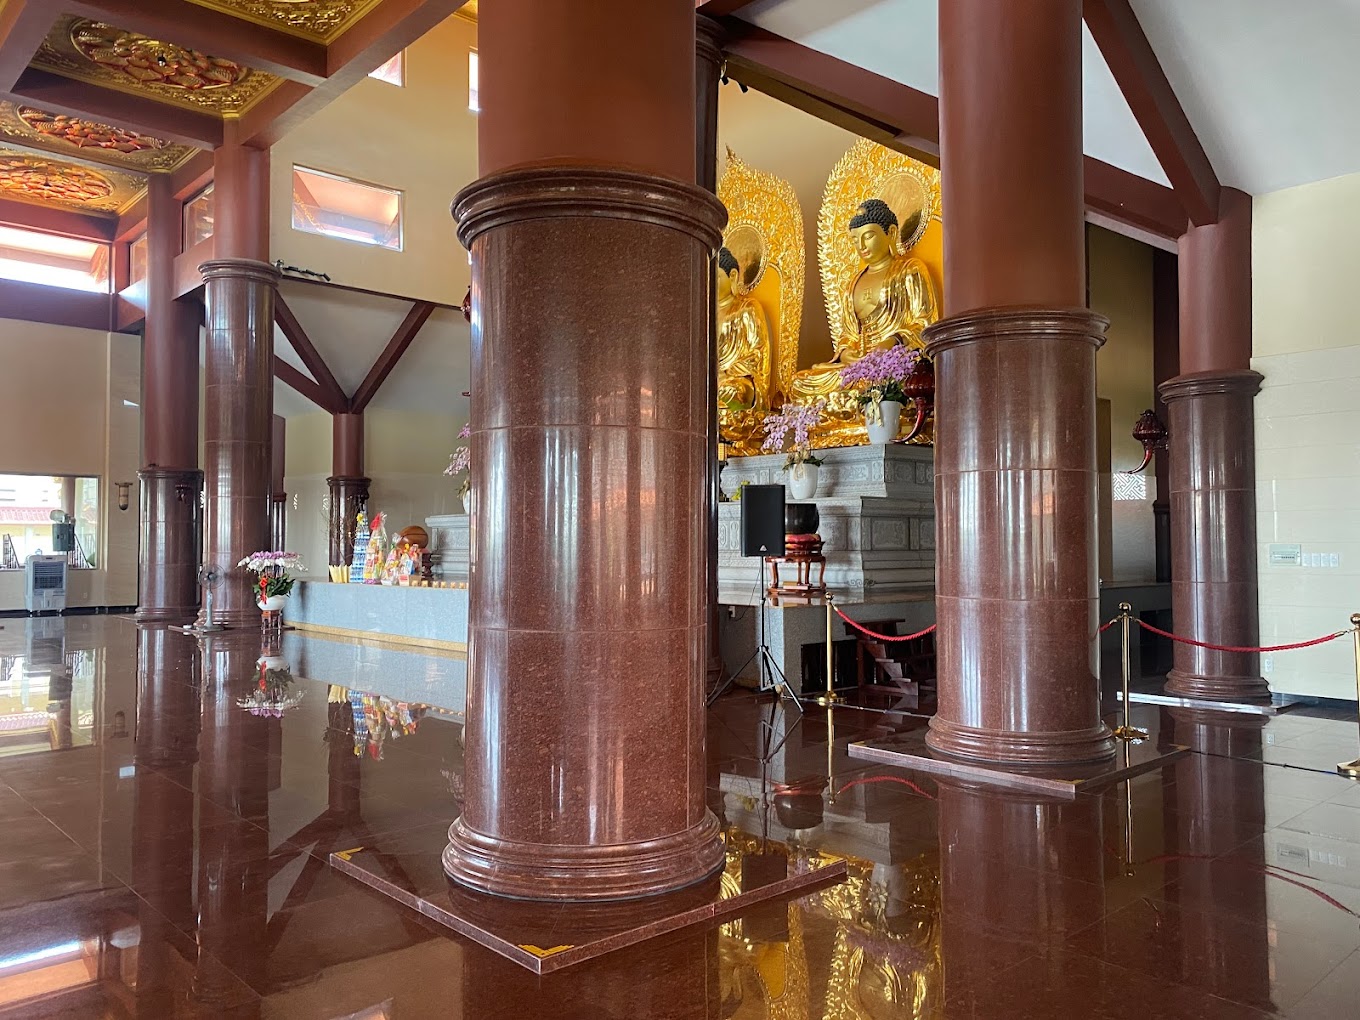 Kiến trúc của chùa chùa Thanh Tâm - Bát Bửu Phật Đài